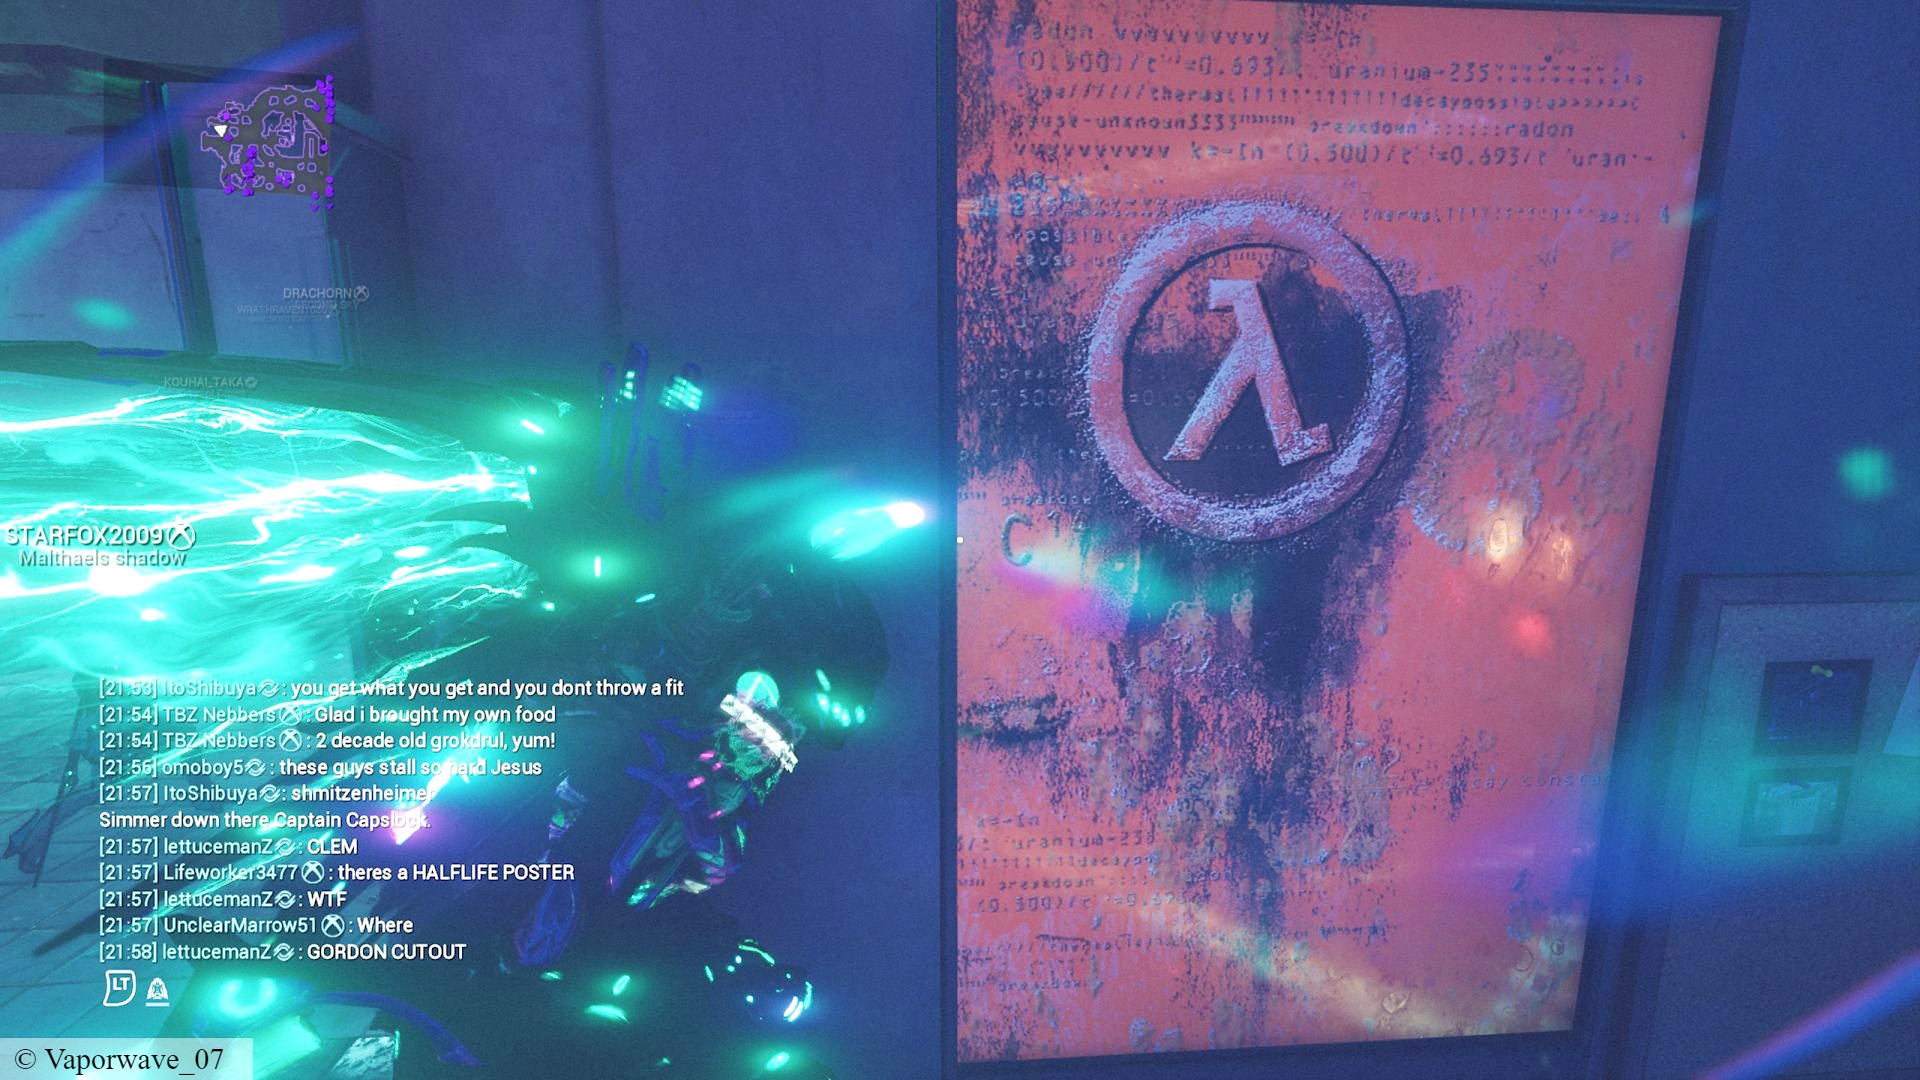 Warframe 1999 Half-Life: Warframe 1999'da Valve FPS oyunu Half-Life için bir poster